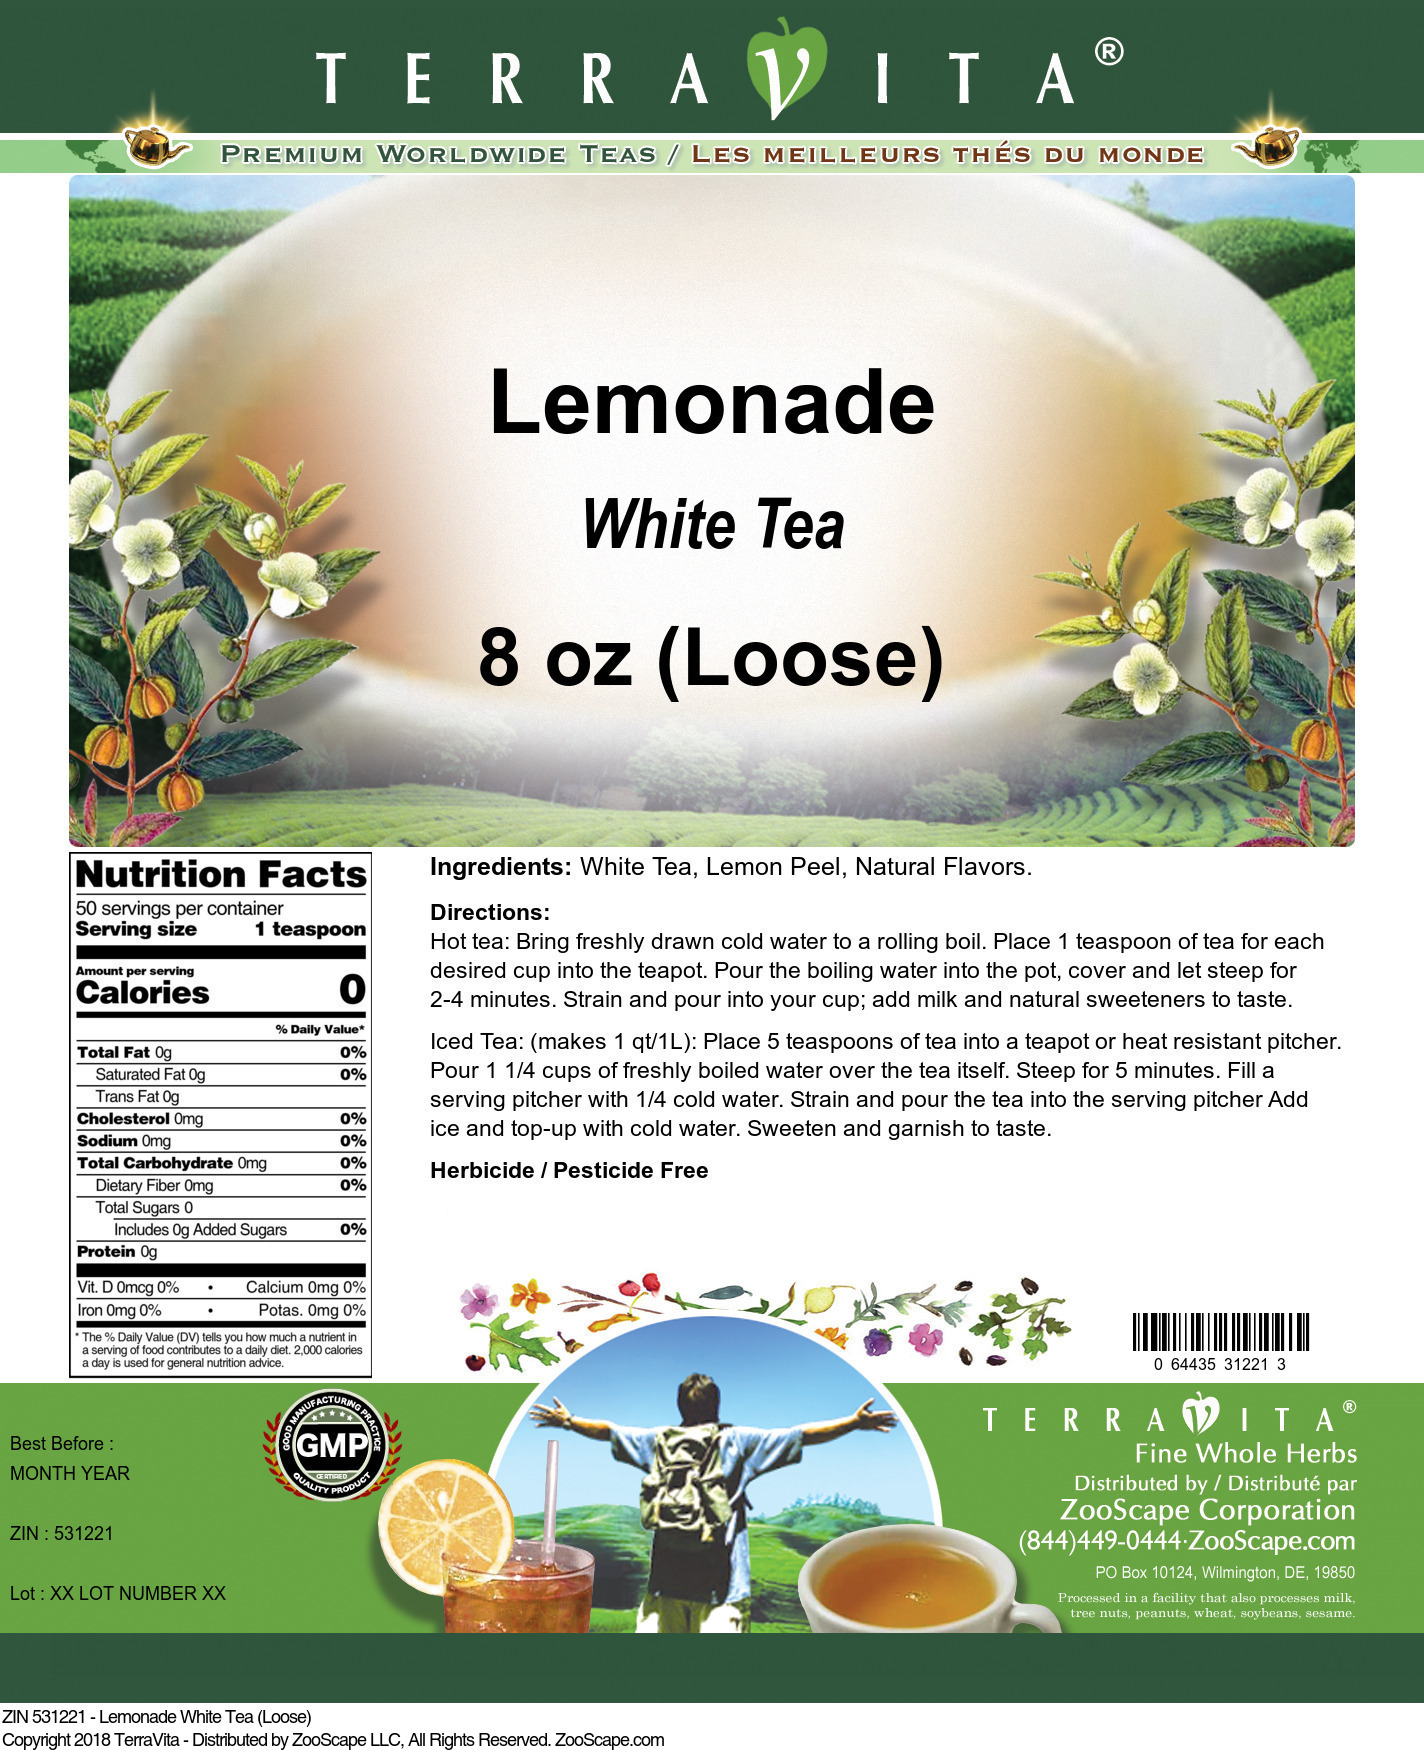 Lemonade White Tea (Loose) - Label